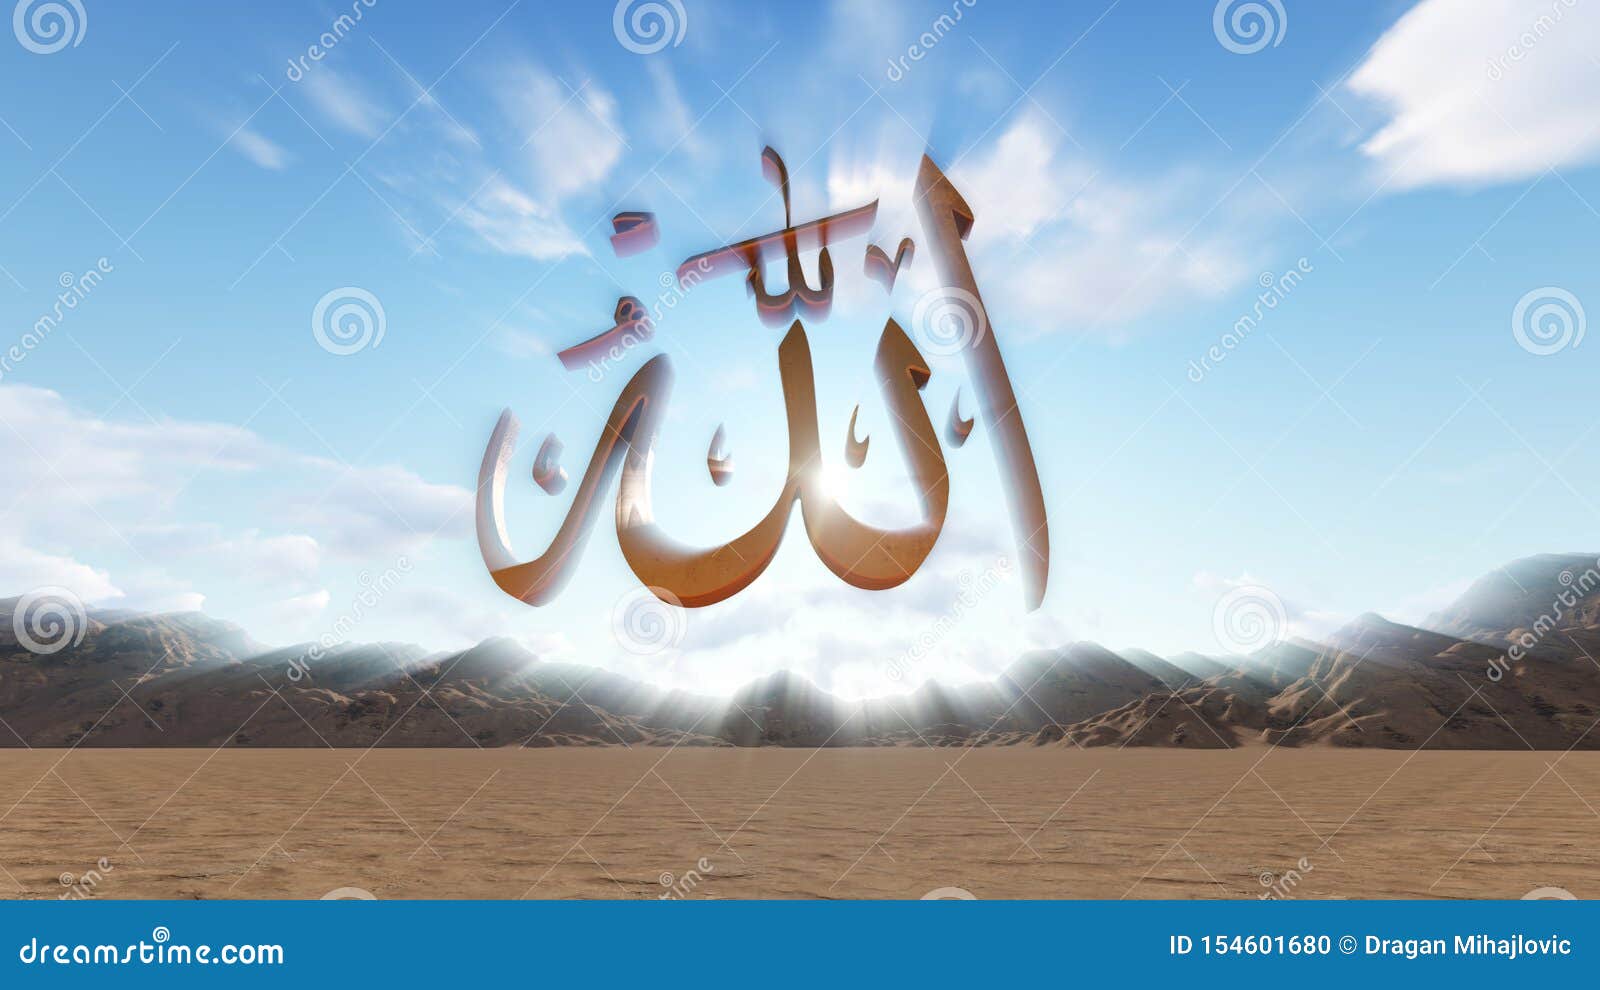 Allah Name of Gold in the Desert Stock Illustration - Illustration ...